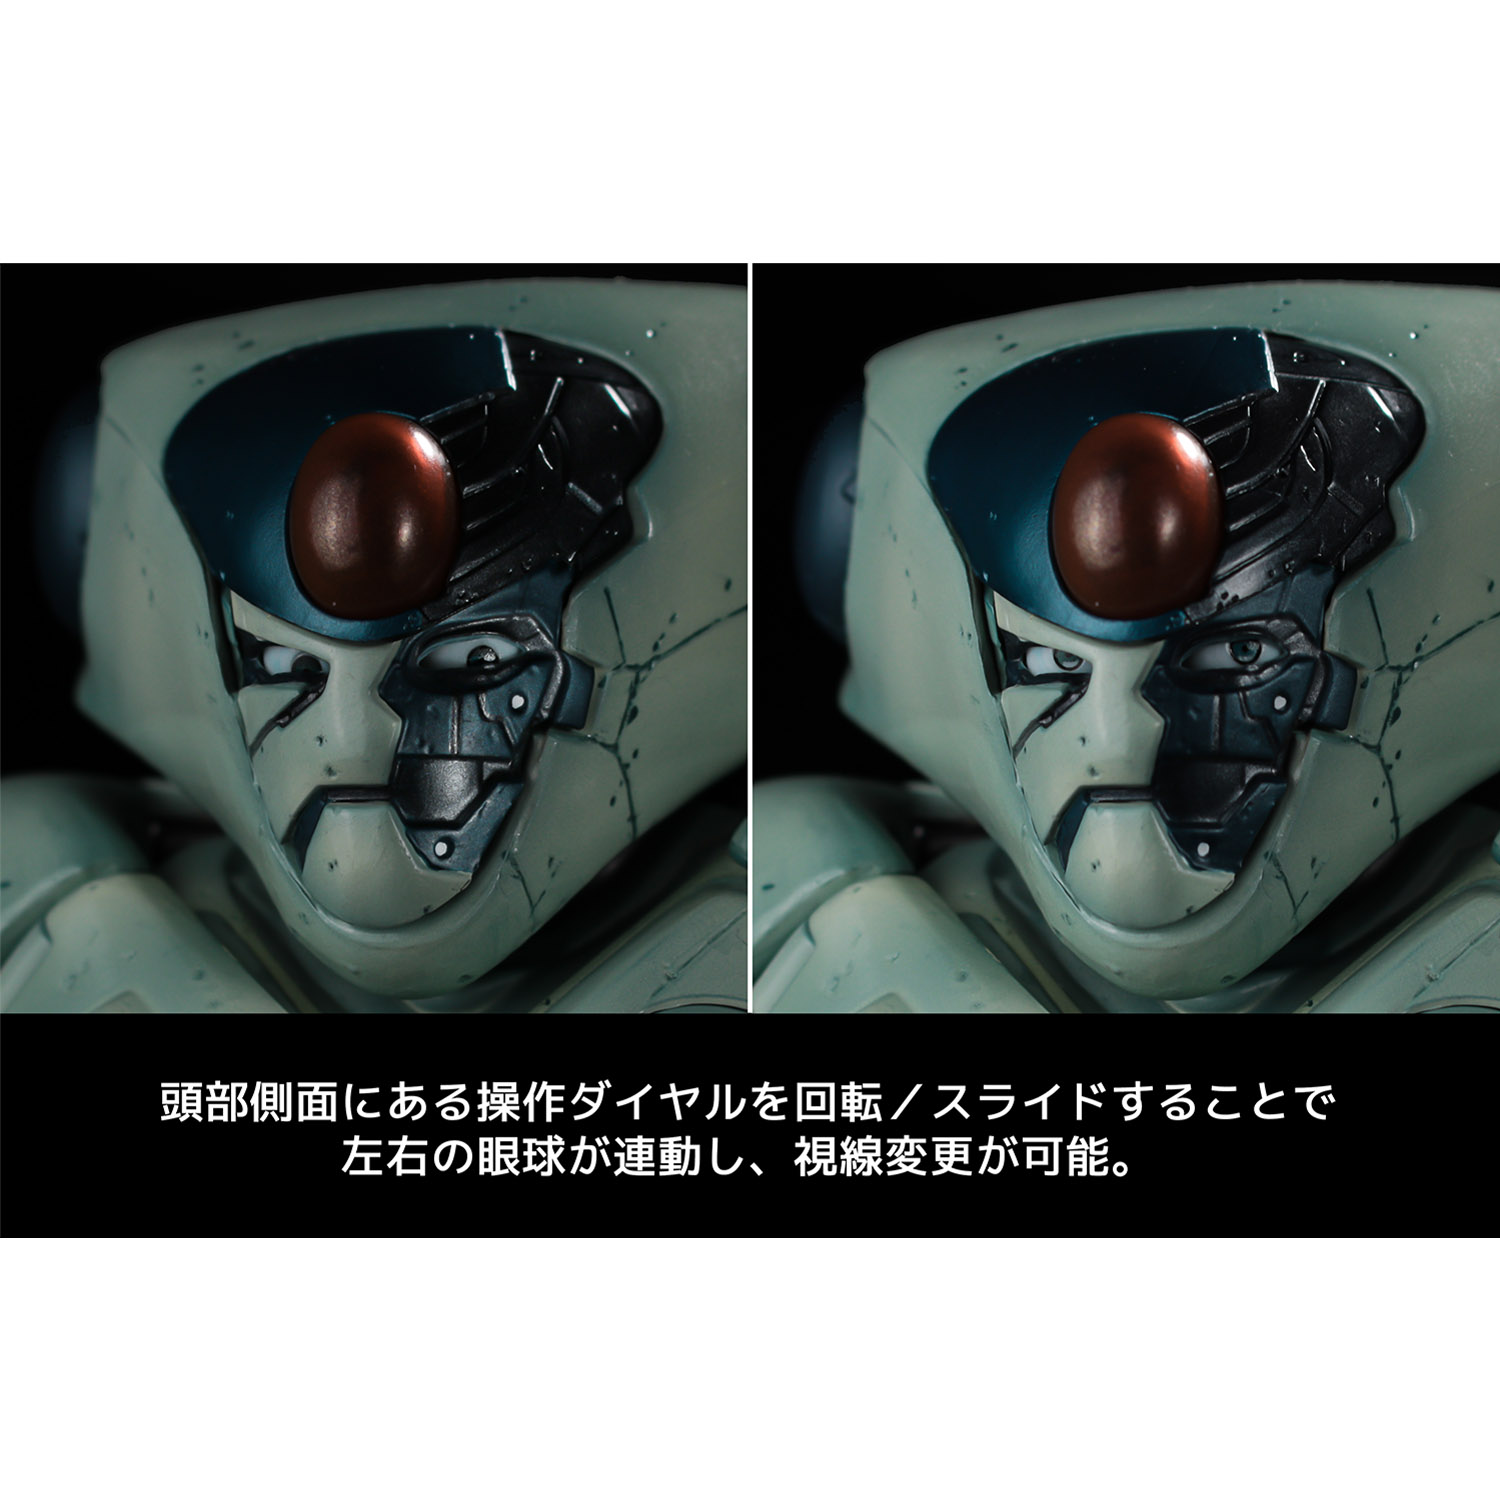 幻魔大戦『ベガ スペシャルカラーエディション』12インチ アクションフィギュア-011